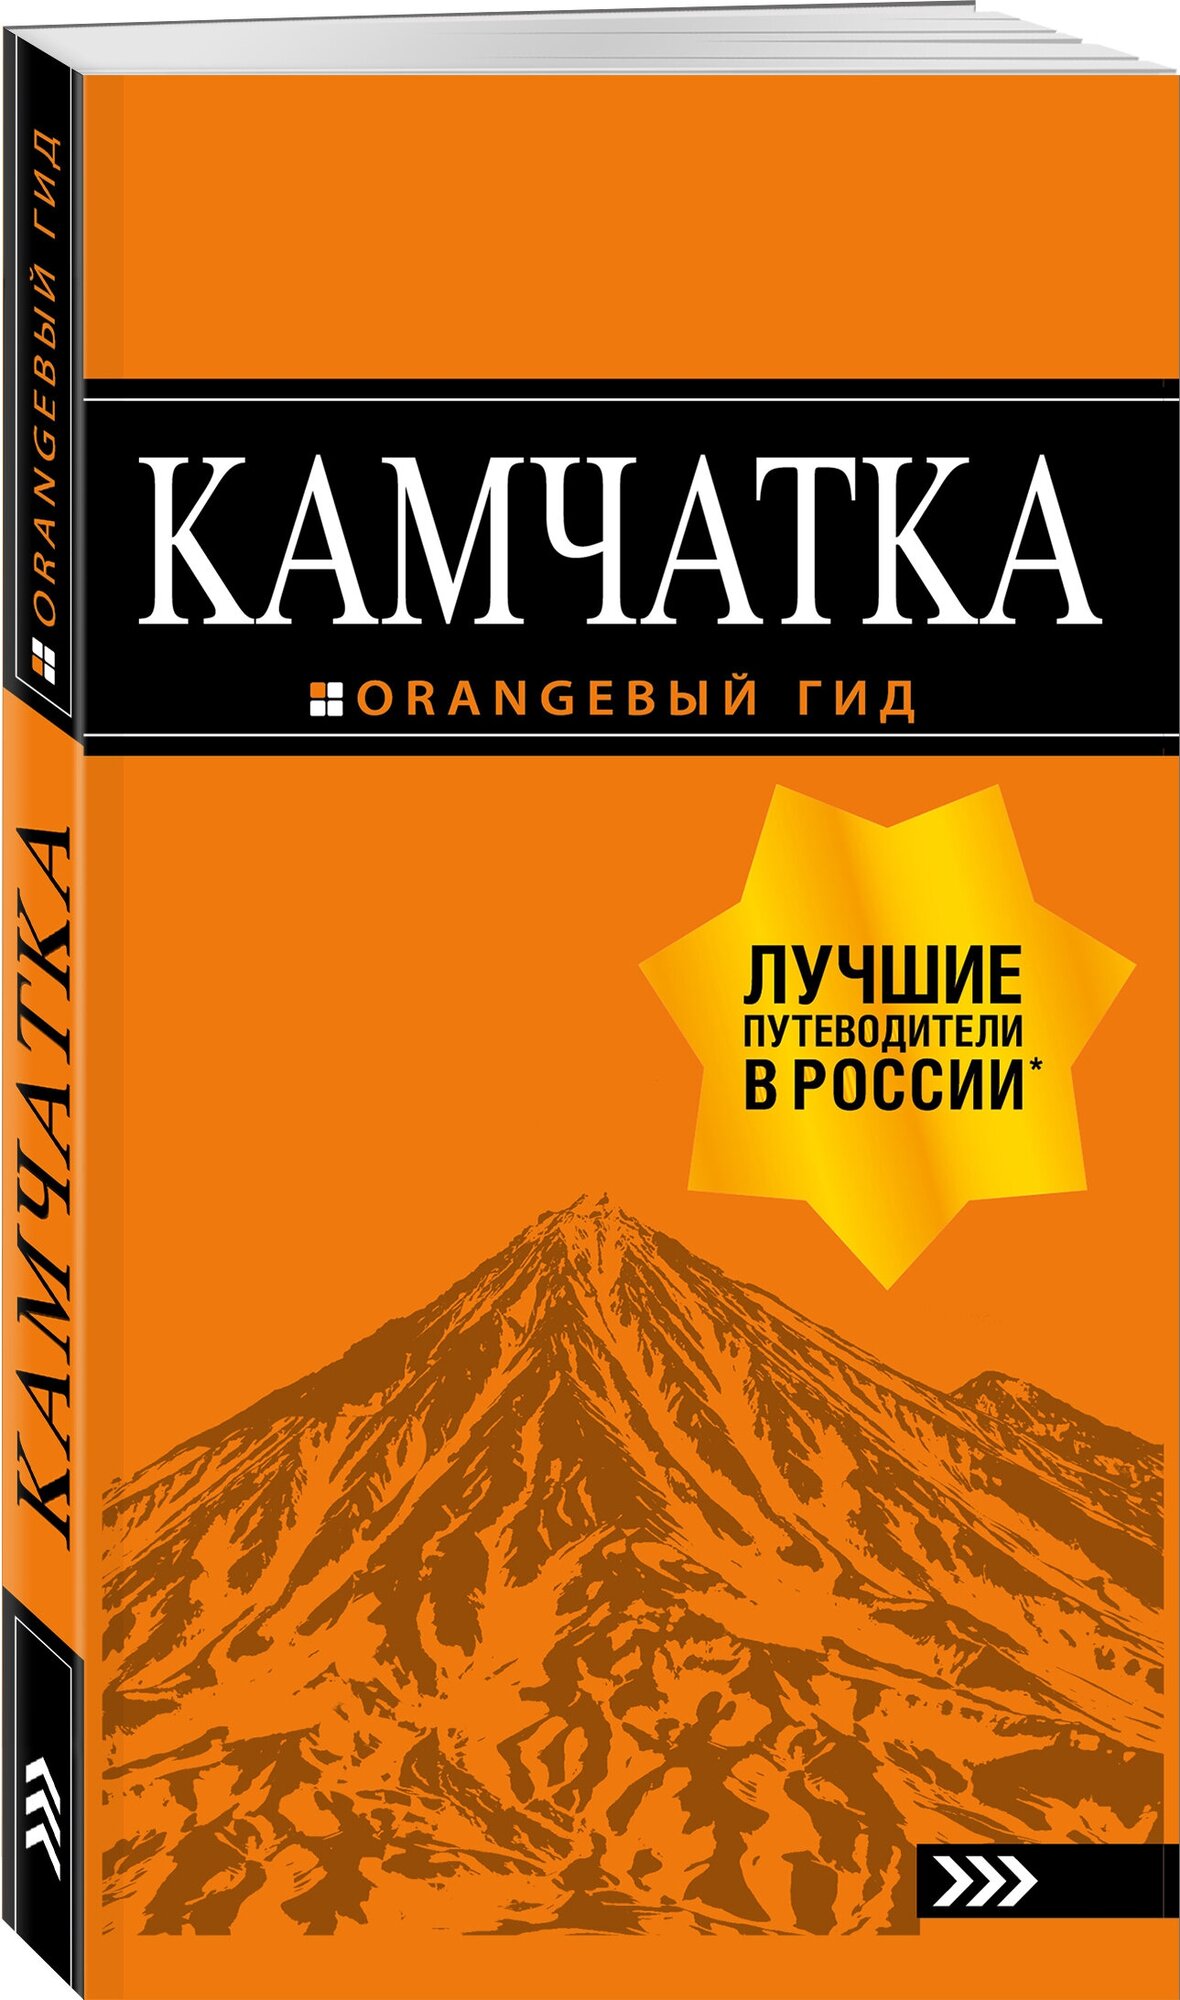 Якубова Н.И. "Камчатка: путеводитель"